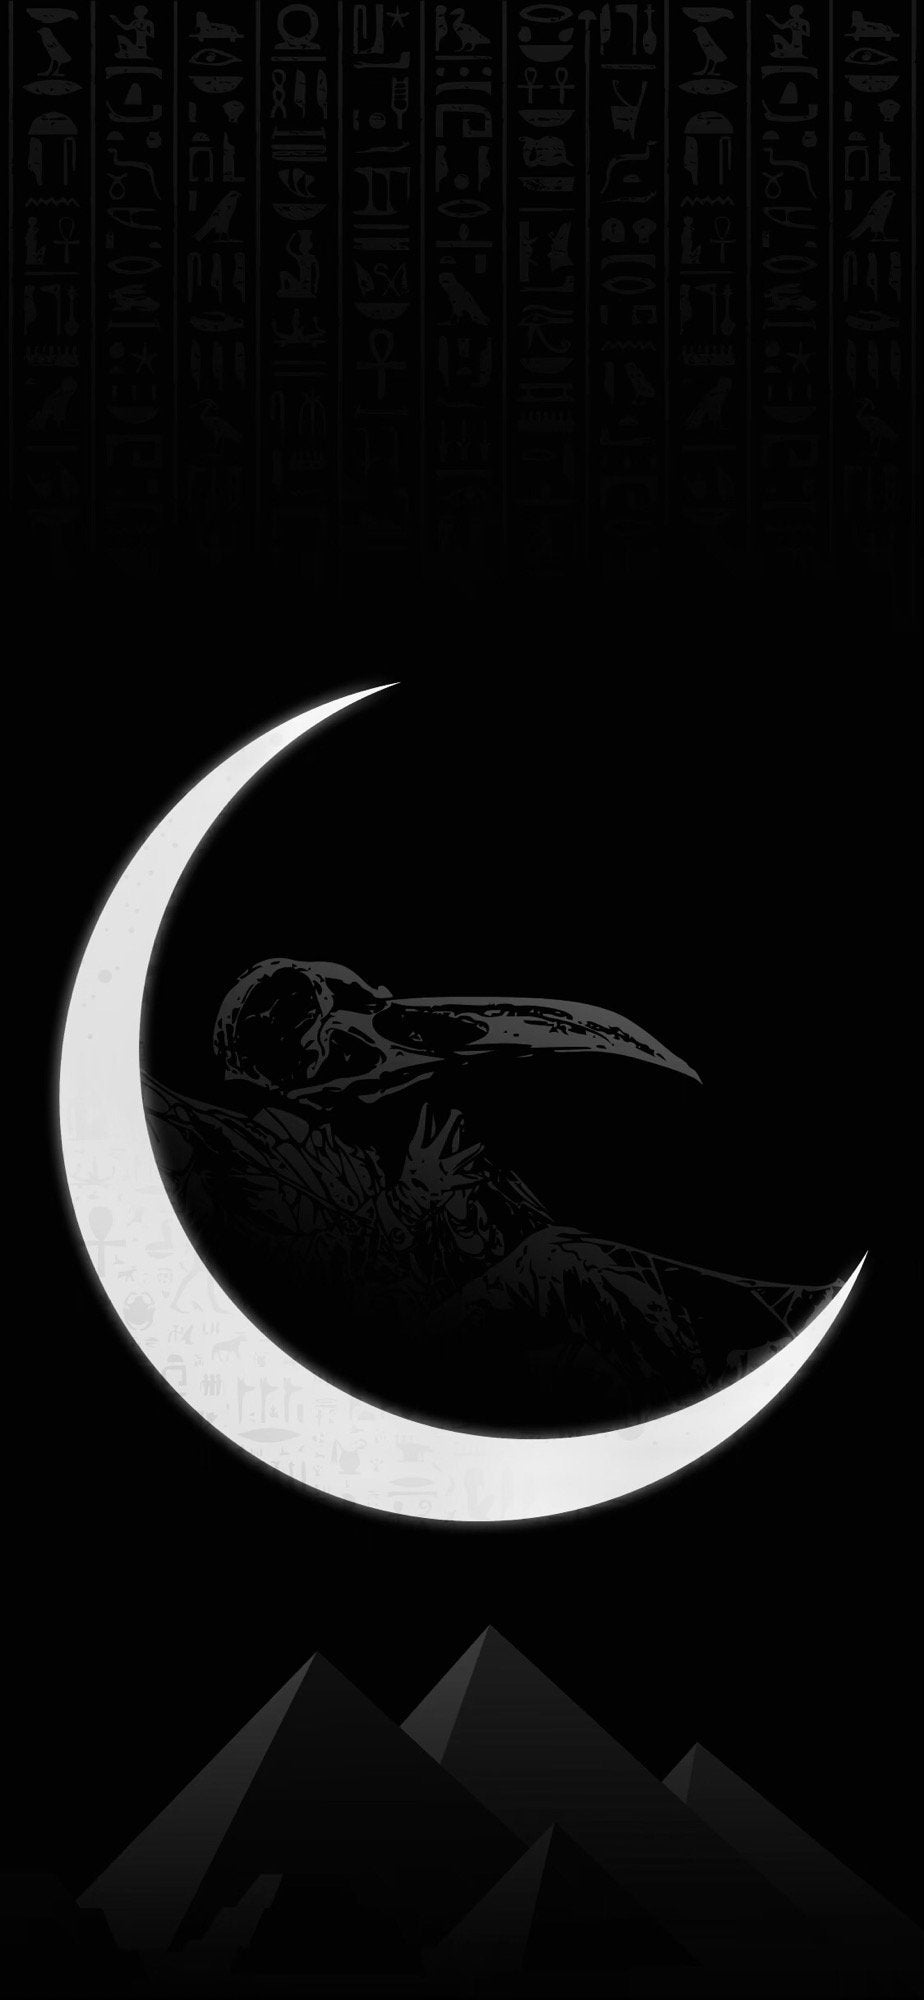 Moon knight desktop wallpaper : r/MoonKnight